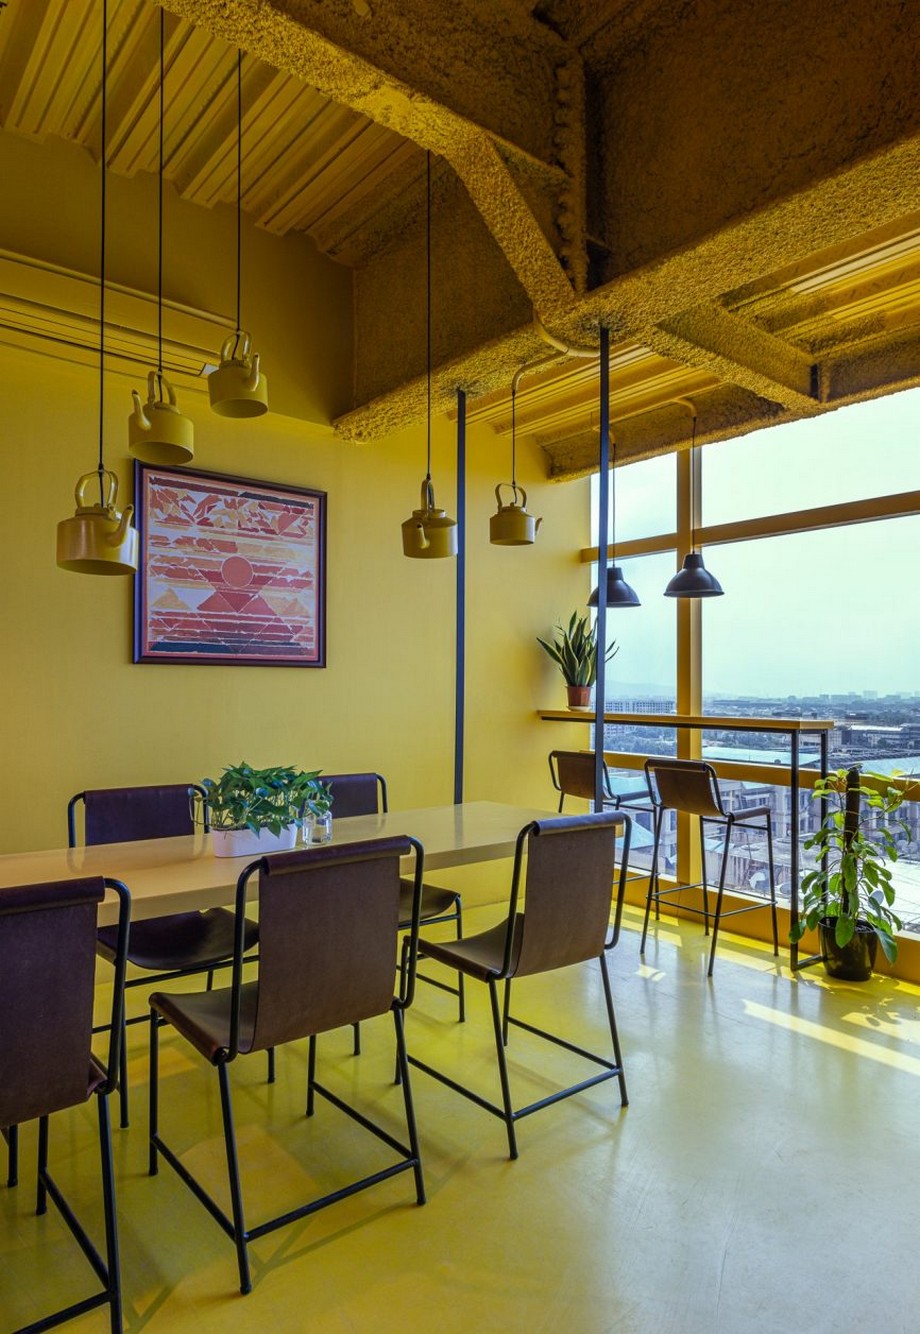 Ngắm nhìn dự án thiết kế nội thất văn phòng lấy cảm hứng từ vật liệu gỗ tự nhiên > thiết kế nội thất văn phòng lấy cảm hứng từ vật liệu gỗ tự nhiên